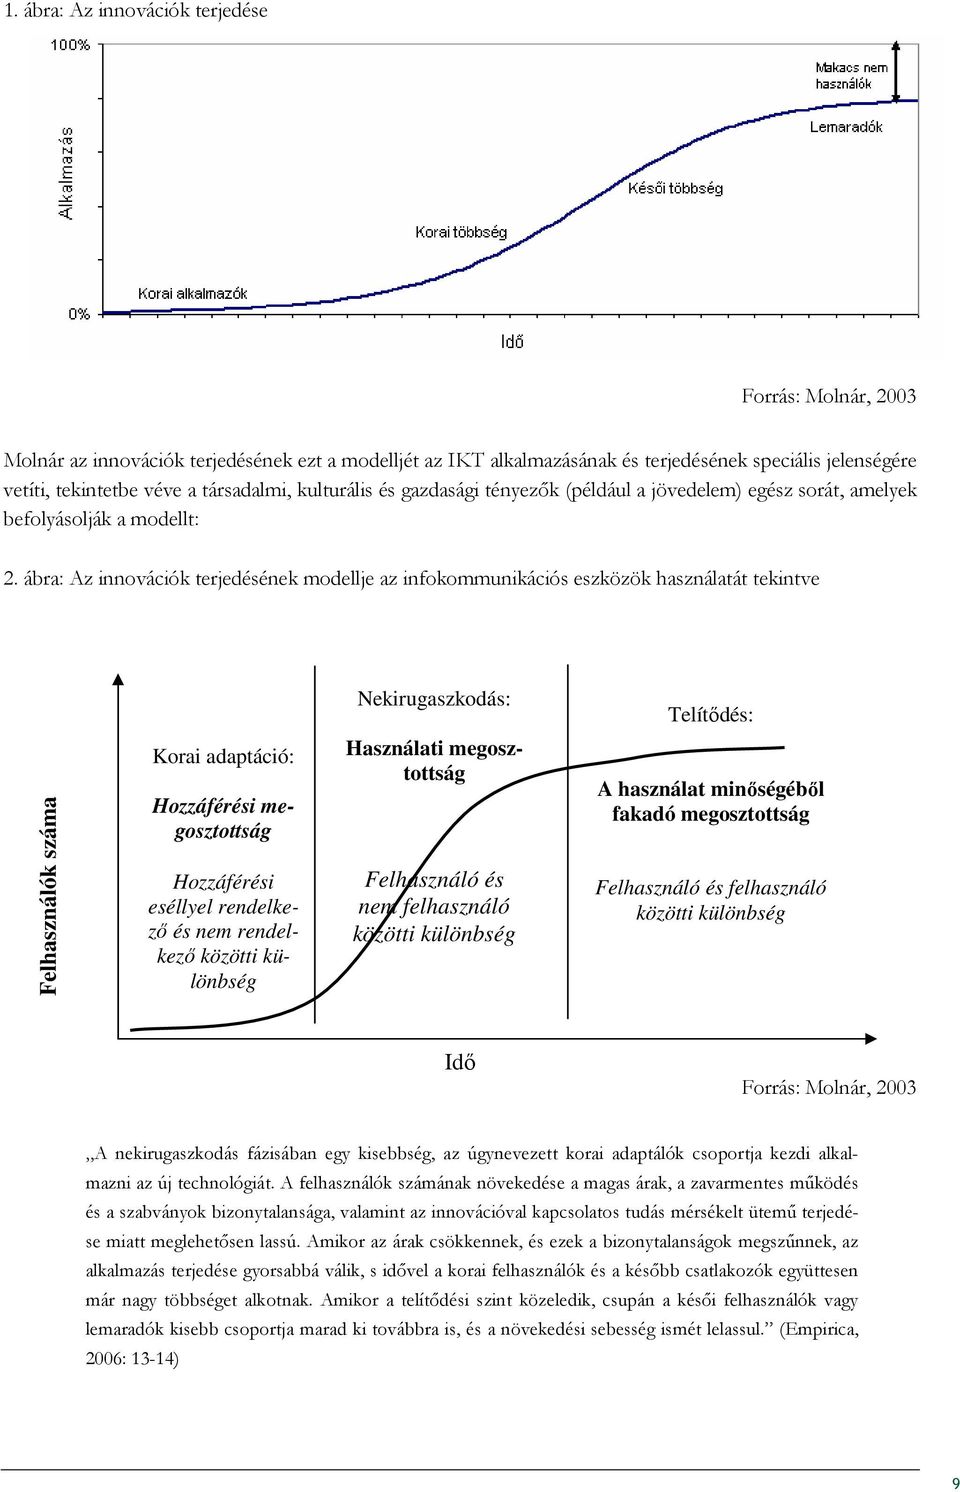 ábra: Az innovációk terjedésének modellje az infokommunikációs eszközök használatát tekintve Felhasználók száma Korai adaptáció: Hozzáférési megosztottság Hozzáférési eséllyel rendelkezı és nem